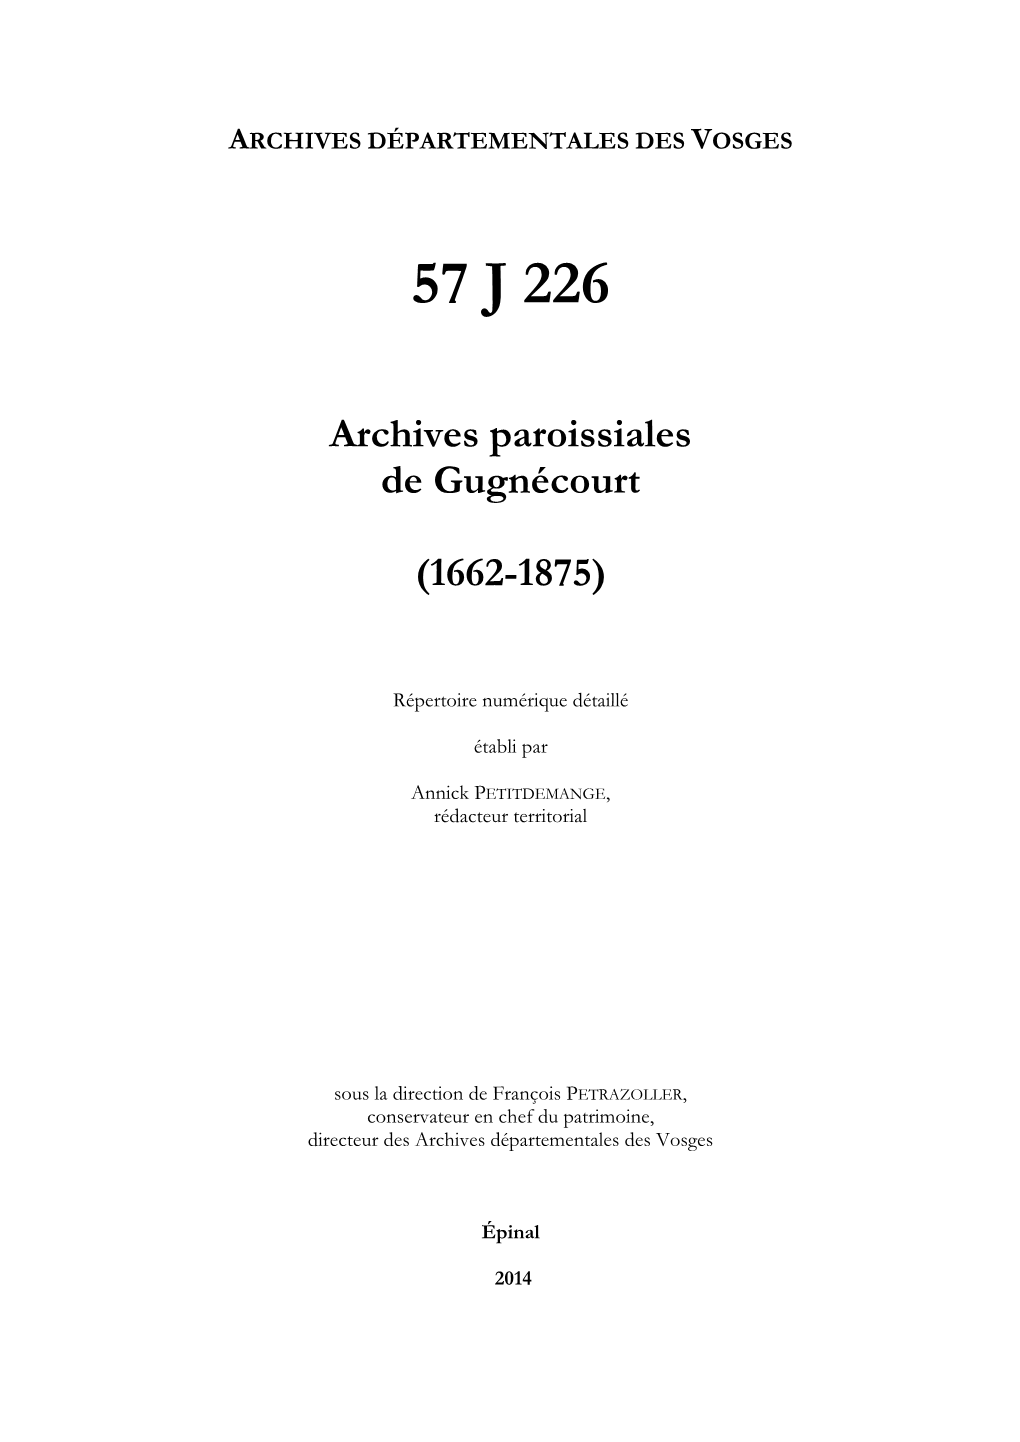 Archives De La Paroisse De Gugnécourt.Pdf